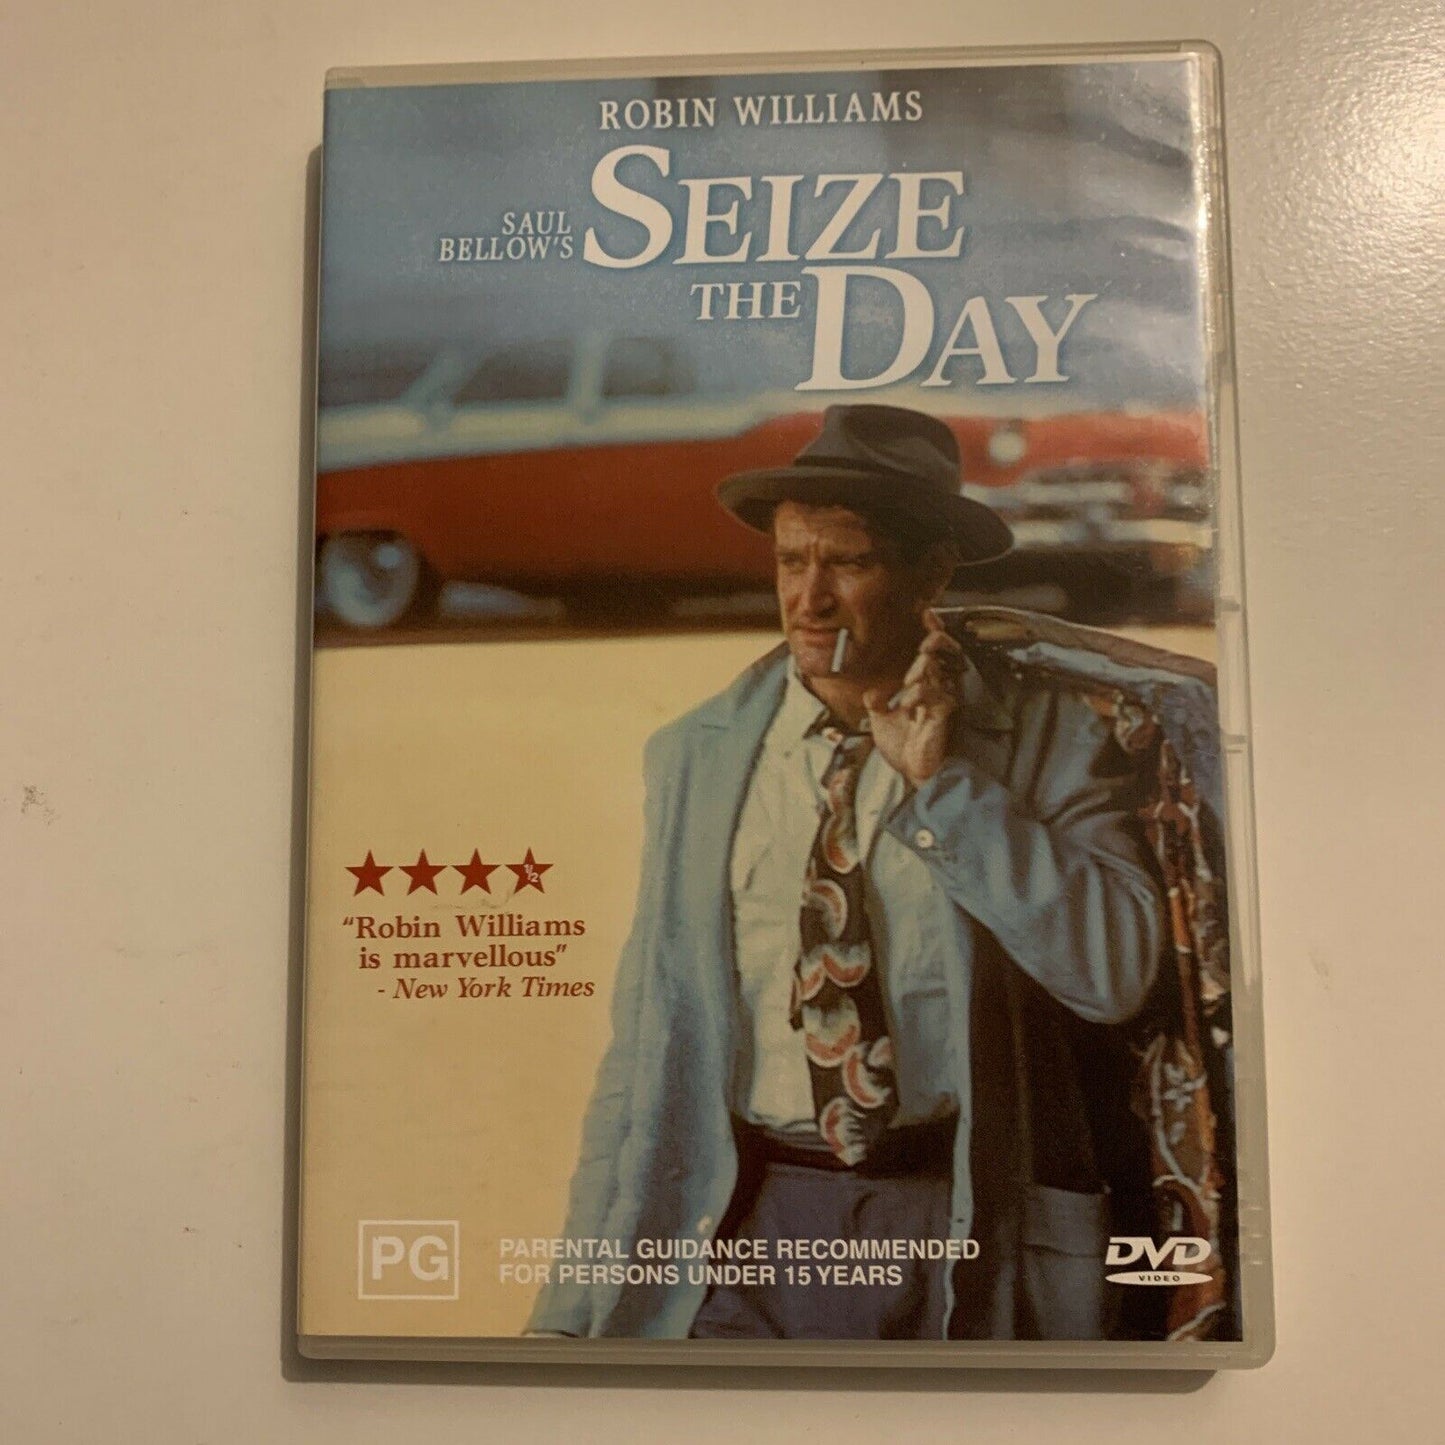 Seize The Day (DVD, 1986) Robin Williams. Region 4